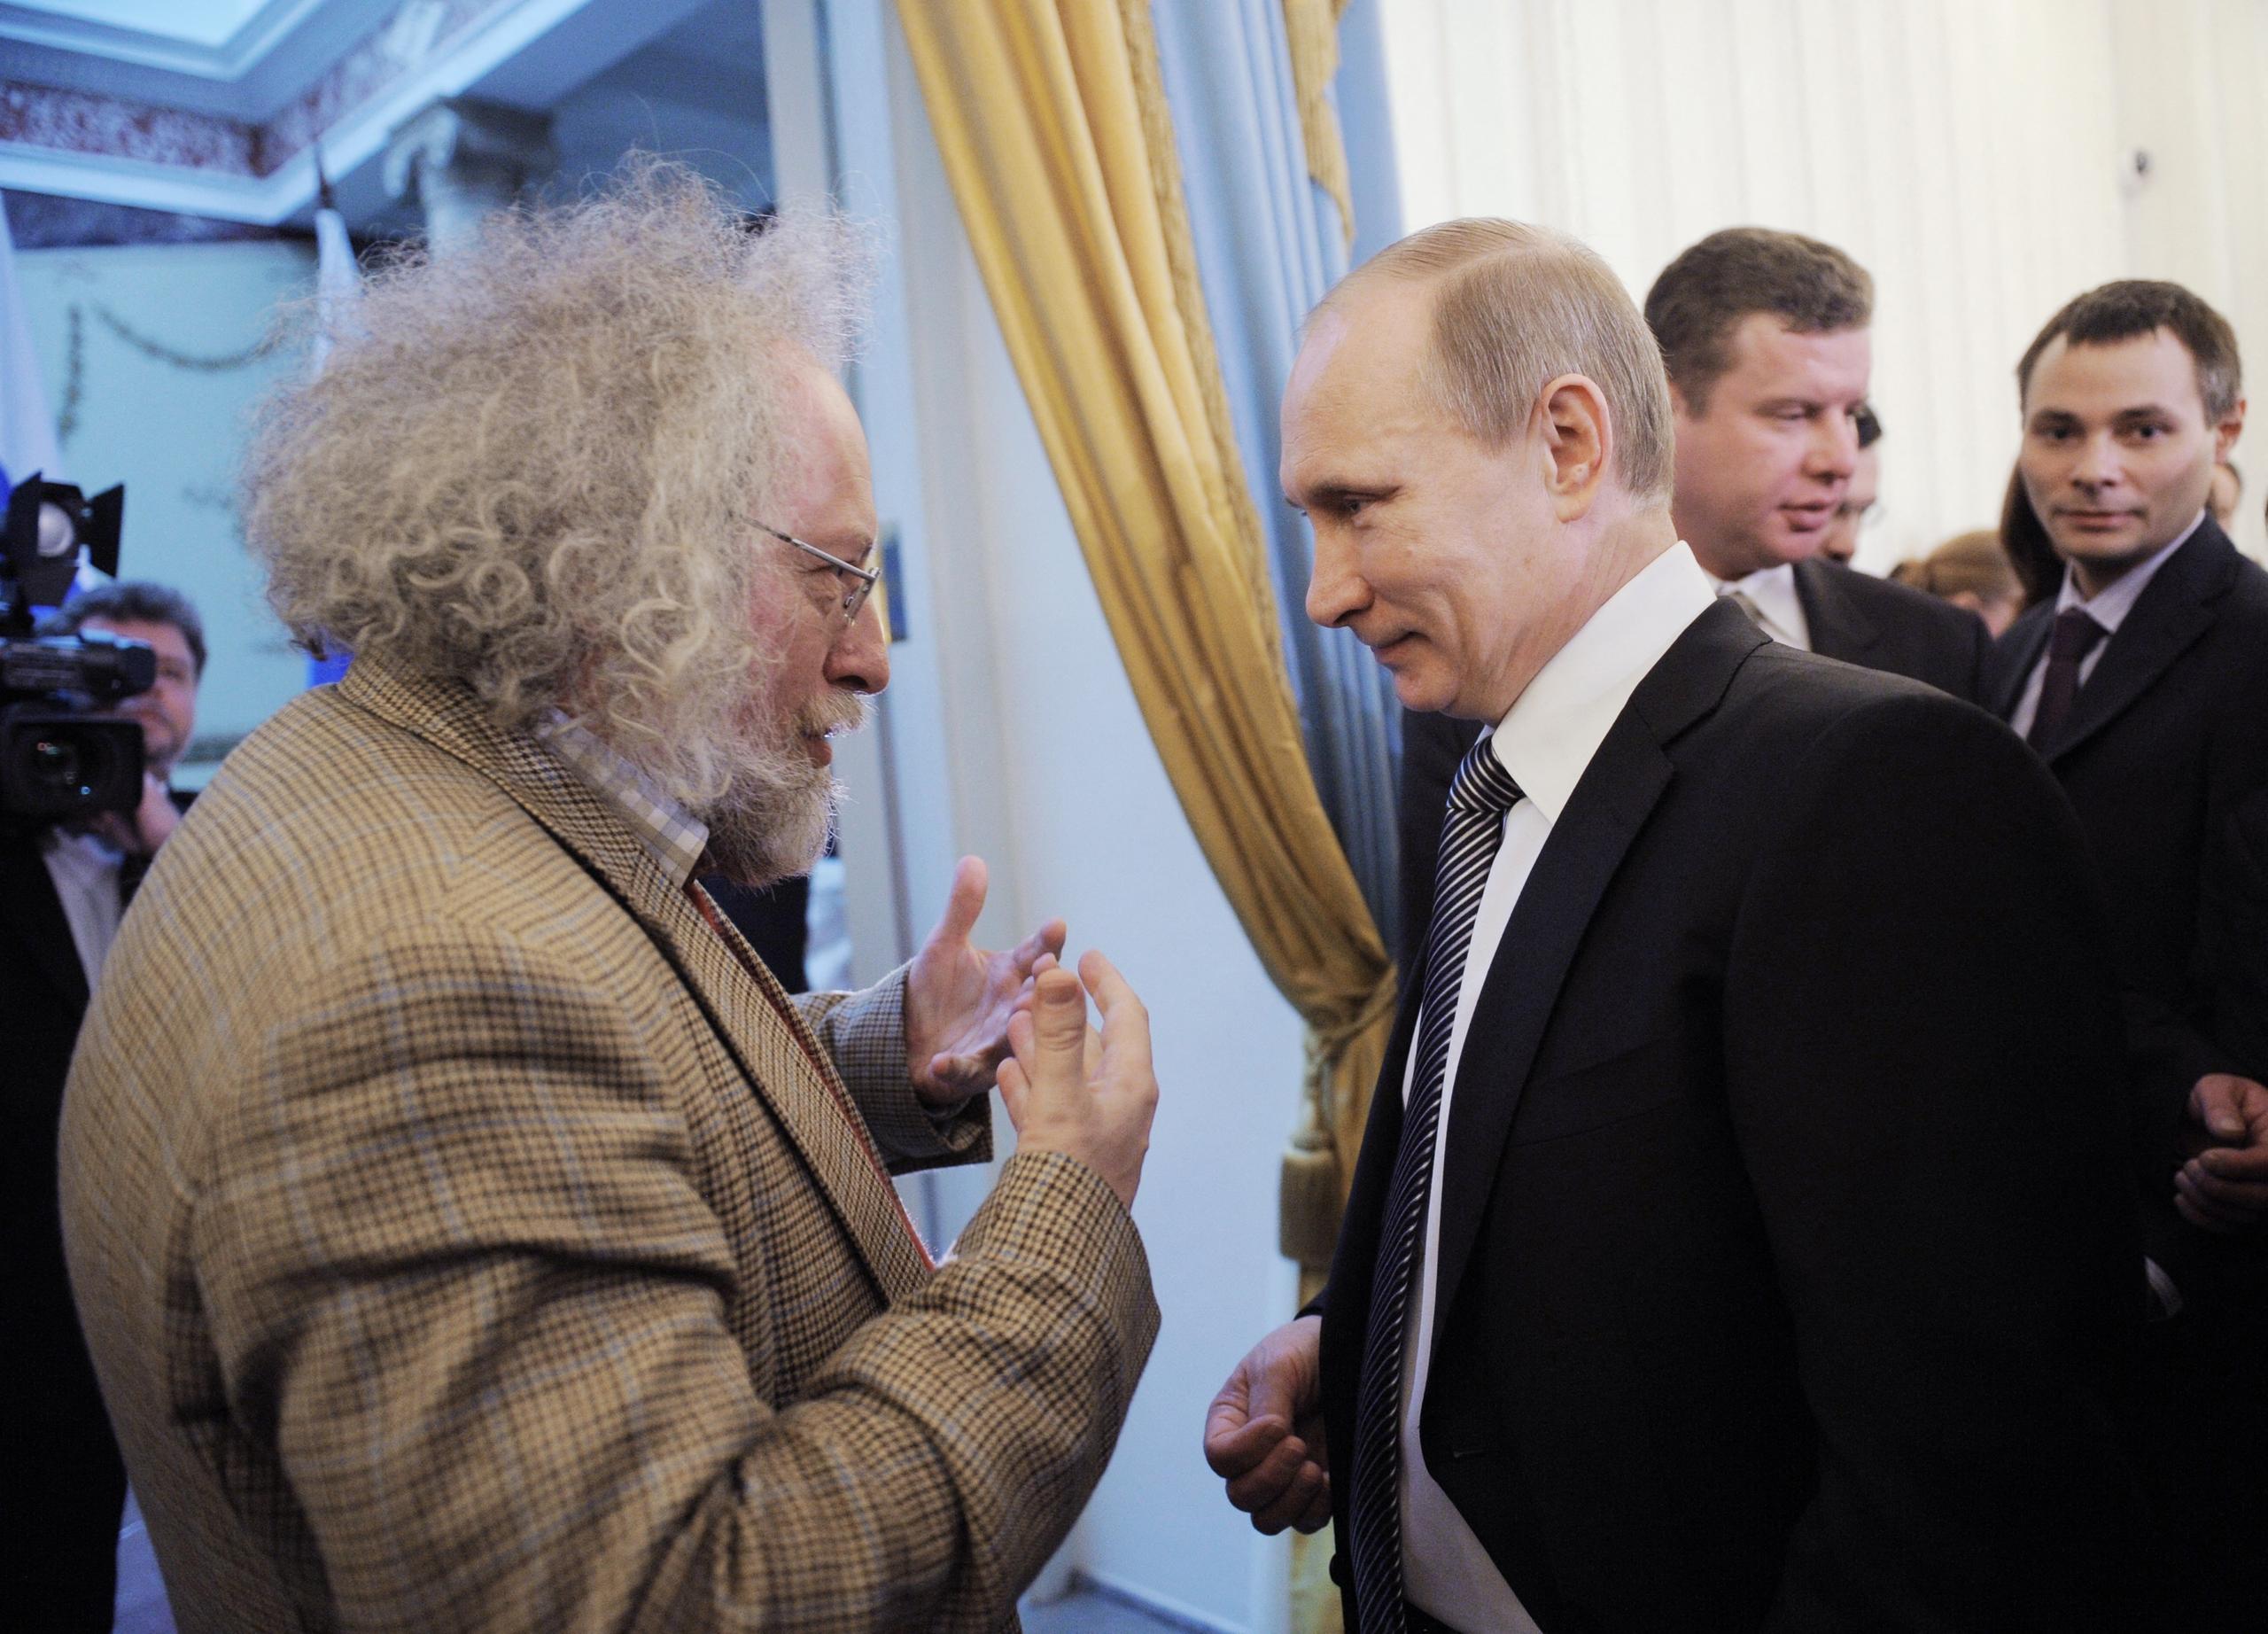 Venediktov with Putin, 2012